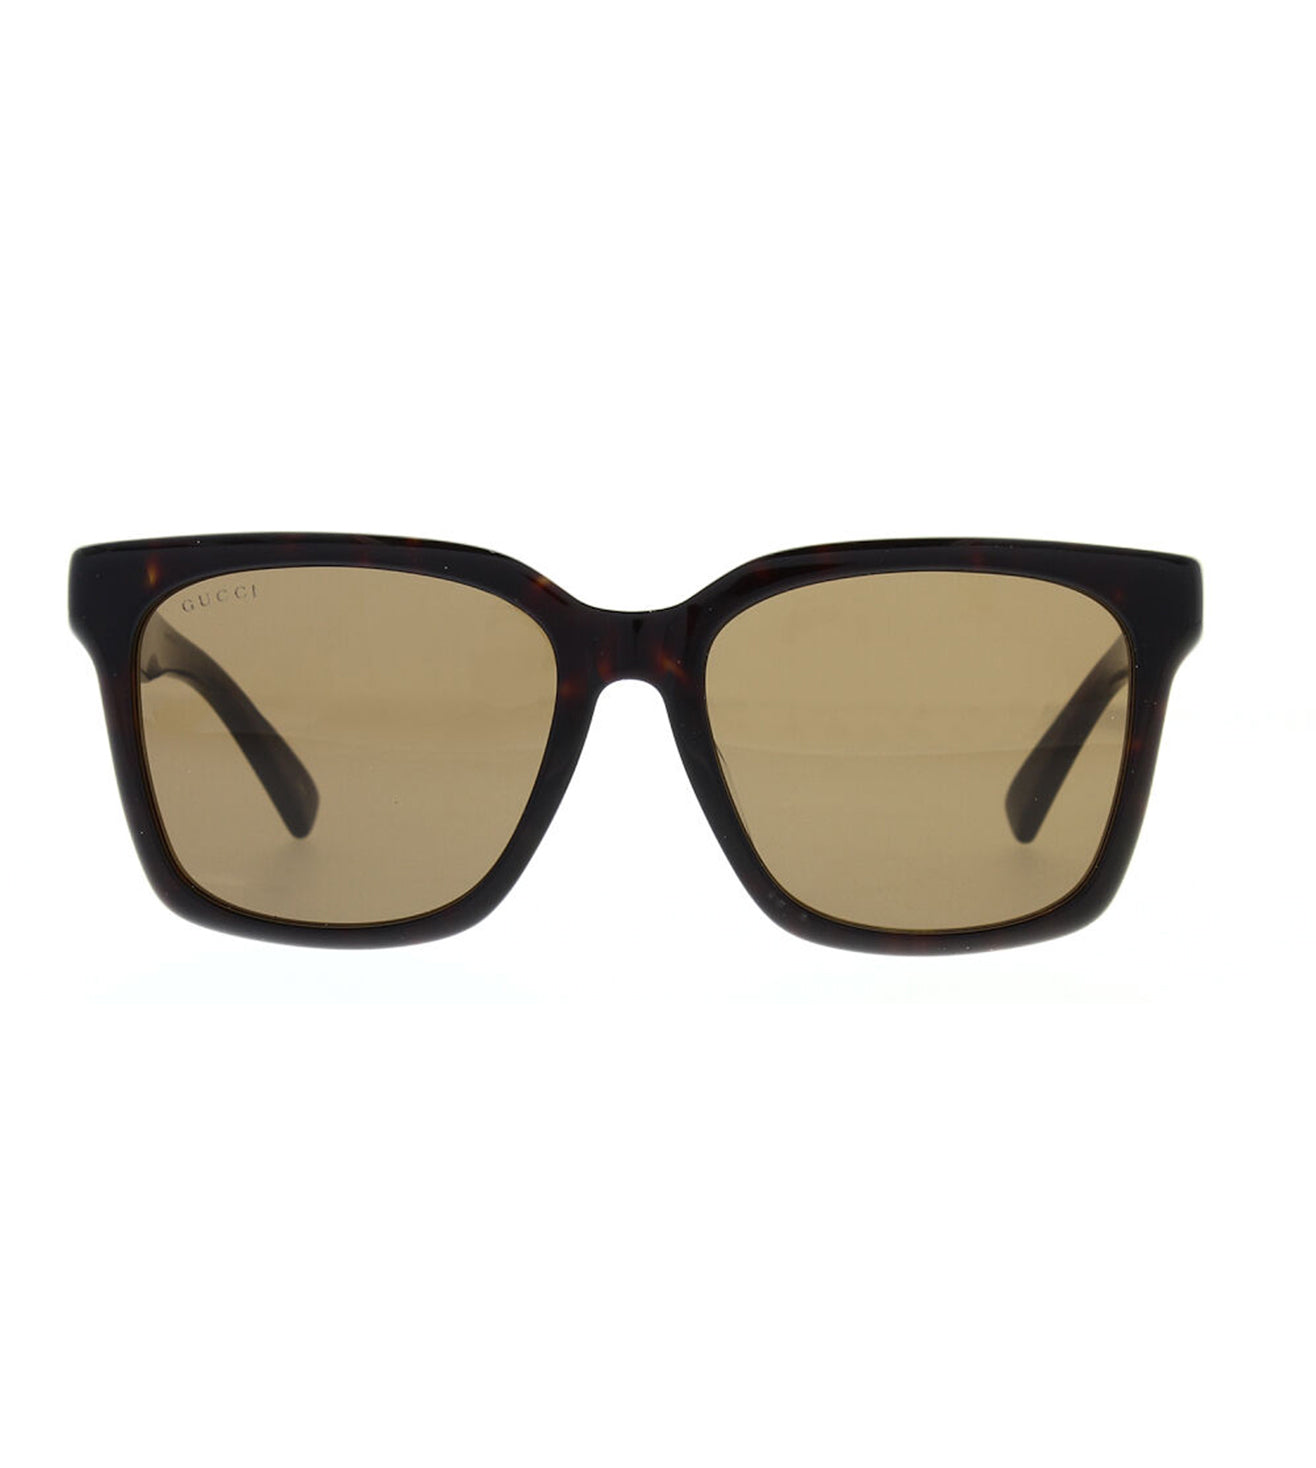 Gucci Unisex Brown Square Sunglasses